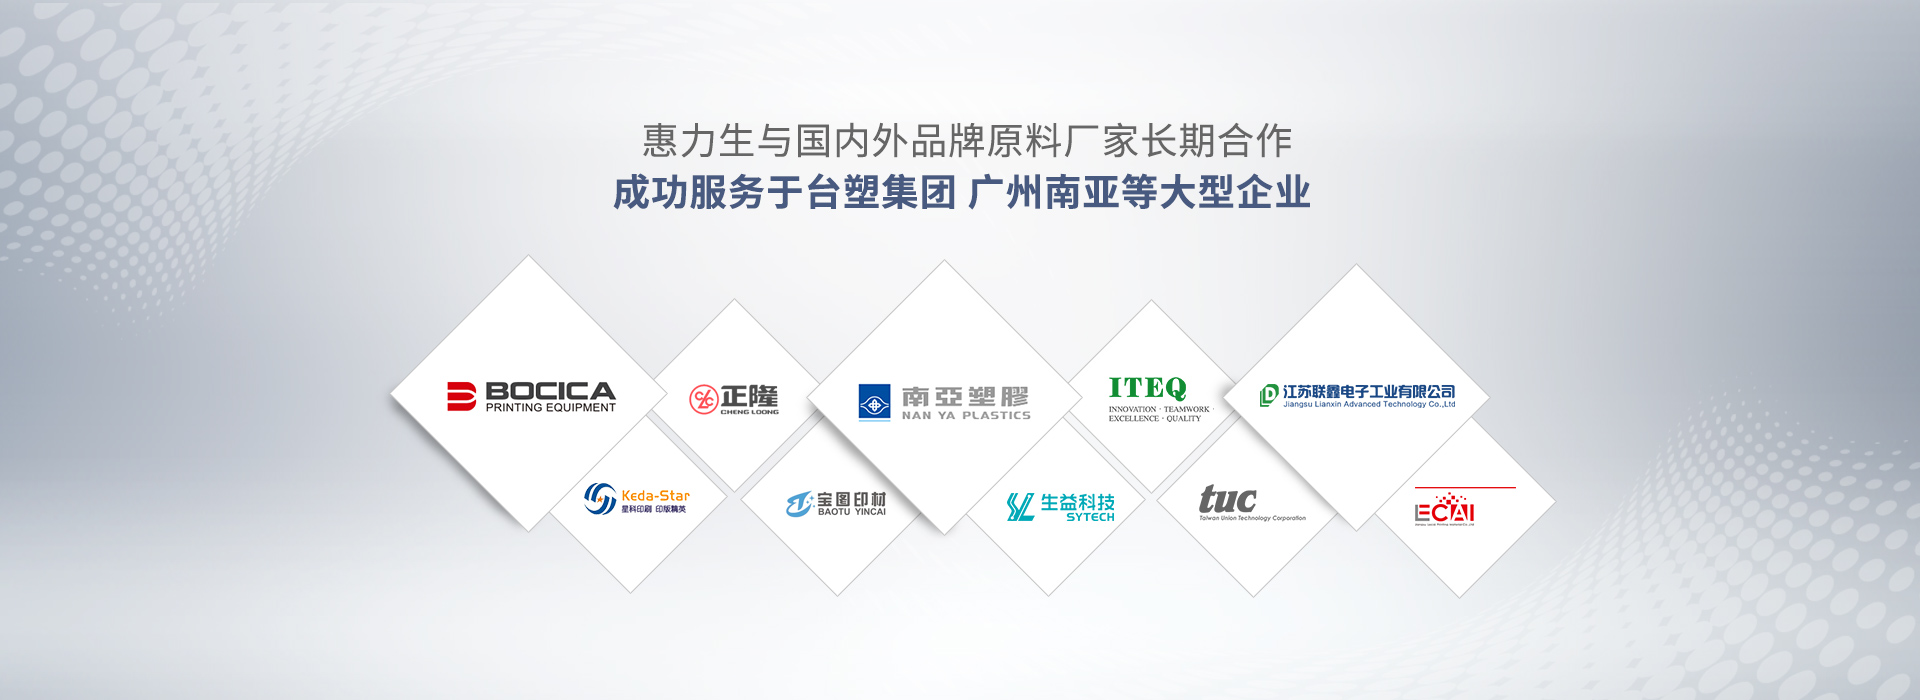 惠力生與國內外品牌原料廠家長期合作 成功服務于臺塑集團、廣州南亞等大型企業